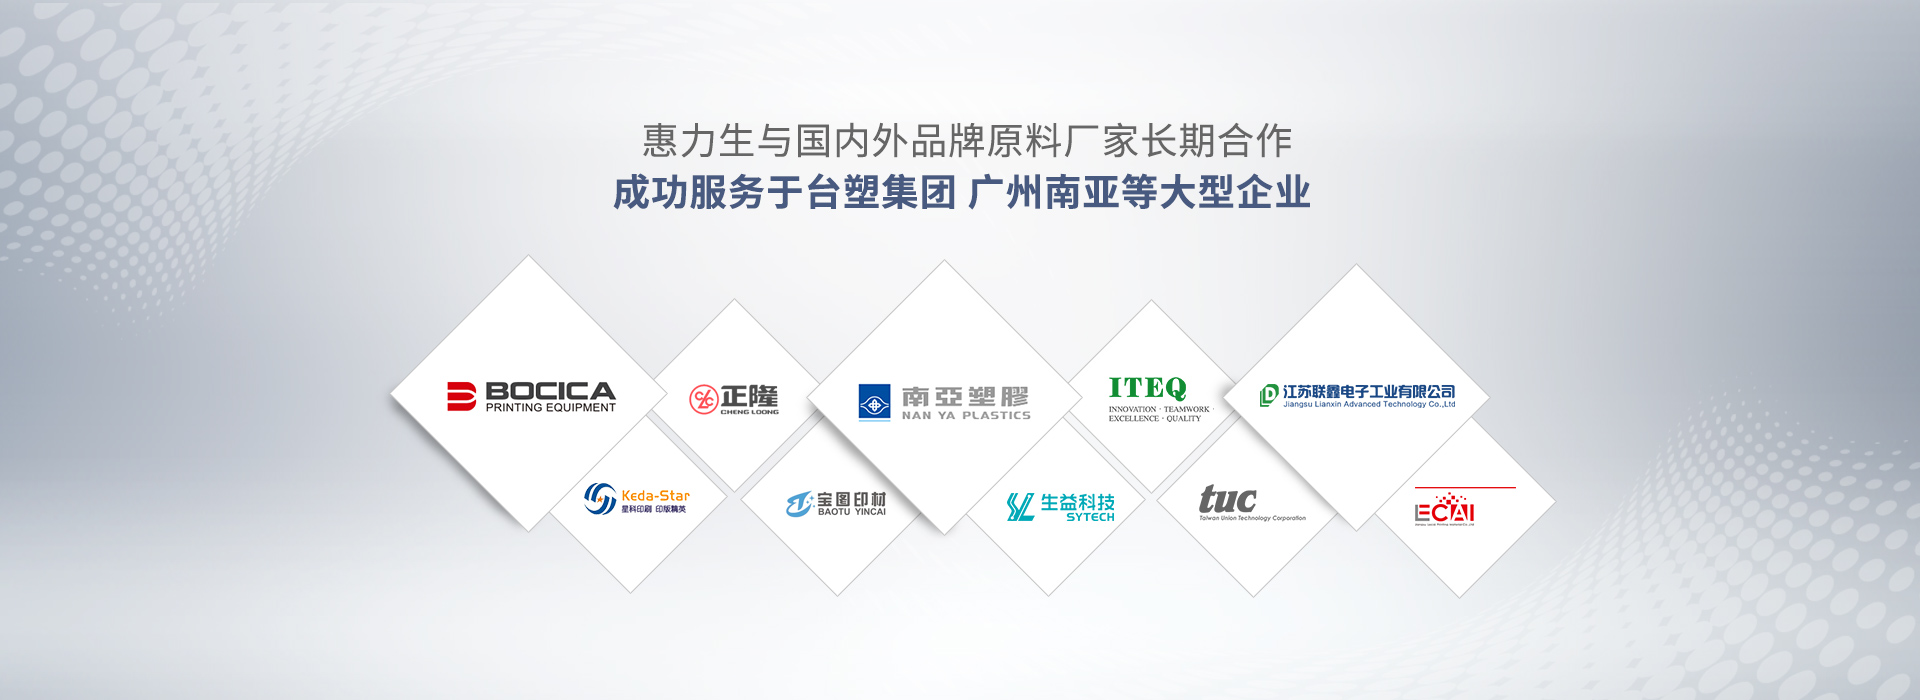 惠力生與國內外品牌原料廠家長期合作 成功服務于臺塑集團、廣州南亞等大型企業